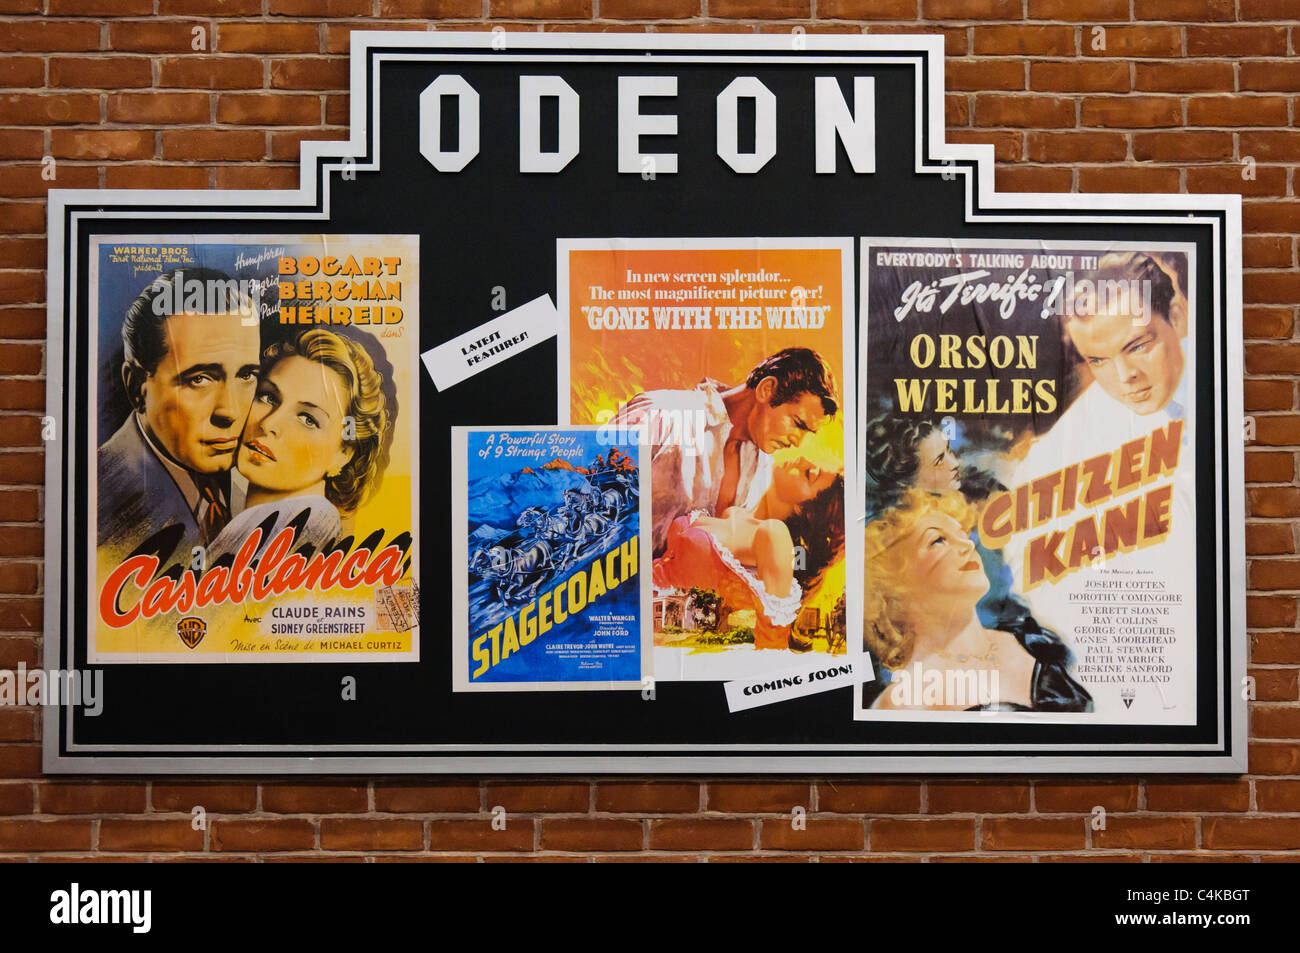 Affiches de cinéma à l'Odeon de publicité 1940/41 Casablanca, Stagecoach, autant en emporte le vent et Citizen Kane Banque D'Images